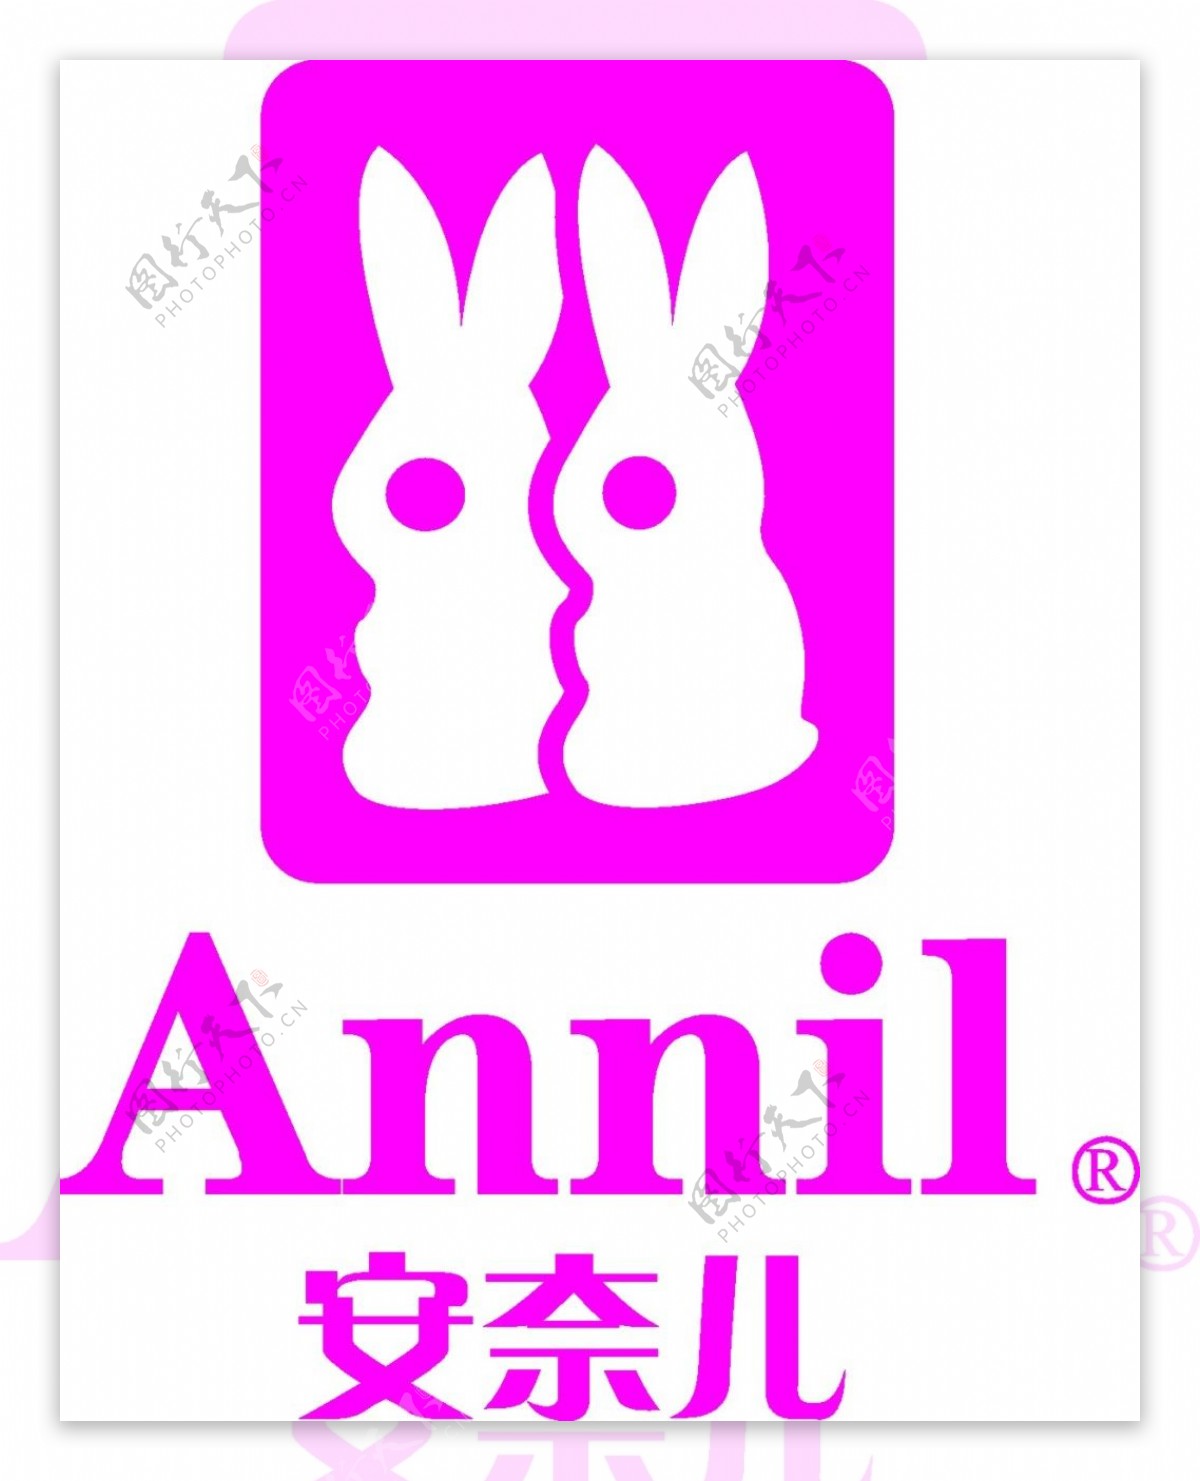 安奈儿公司logo素材矢量图